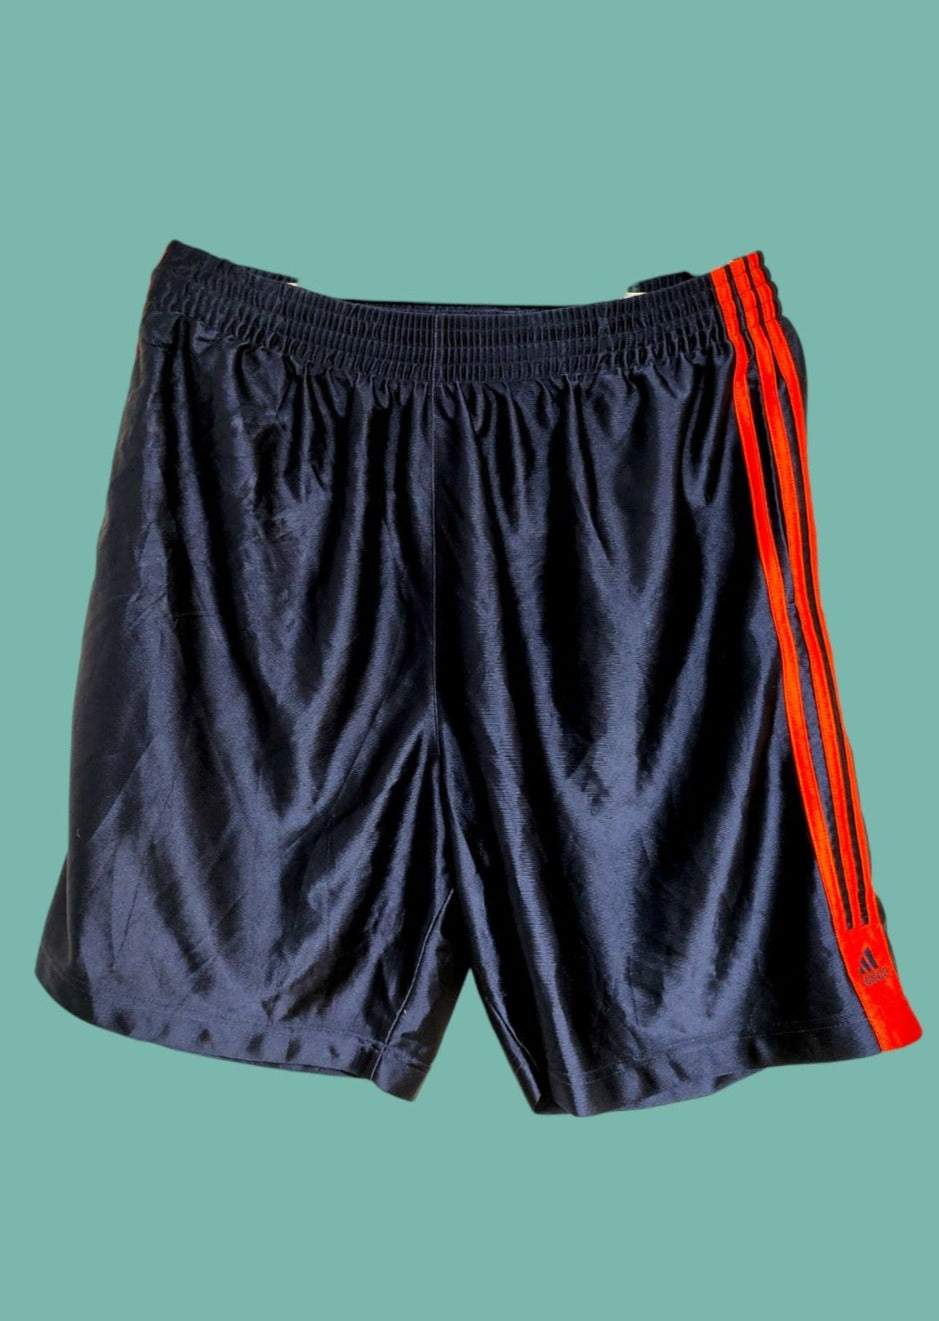 Ανδρικό, Γυαλιστερό Basketball shorts ADIDAS σε Σκούρο Μπλε χρώμα (Large)